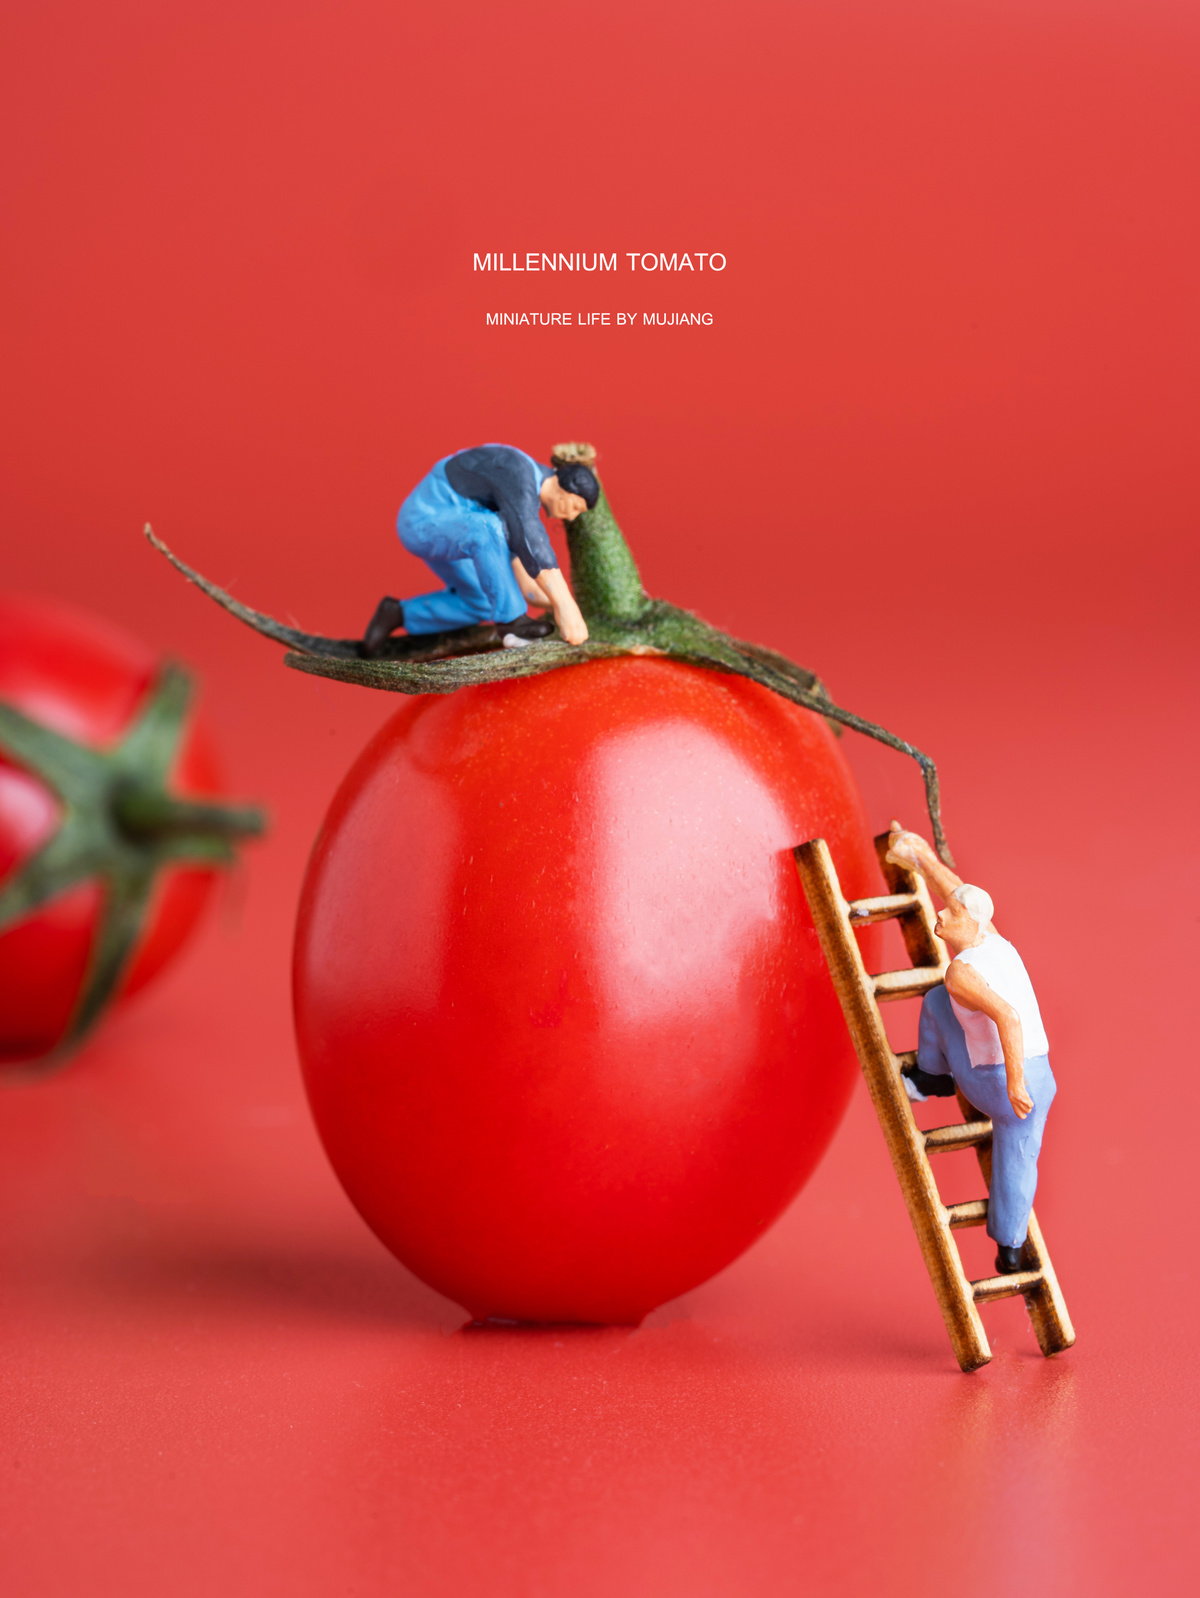 小人儿在红色的背景上爬向大西红柿。